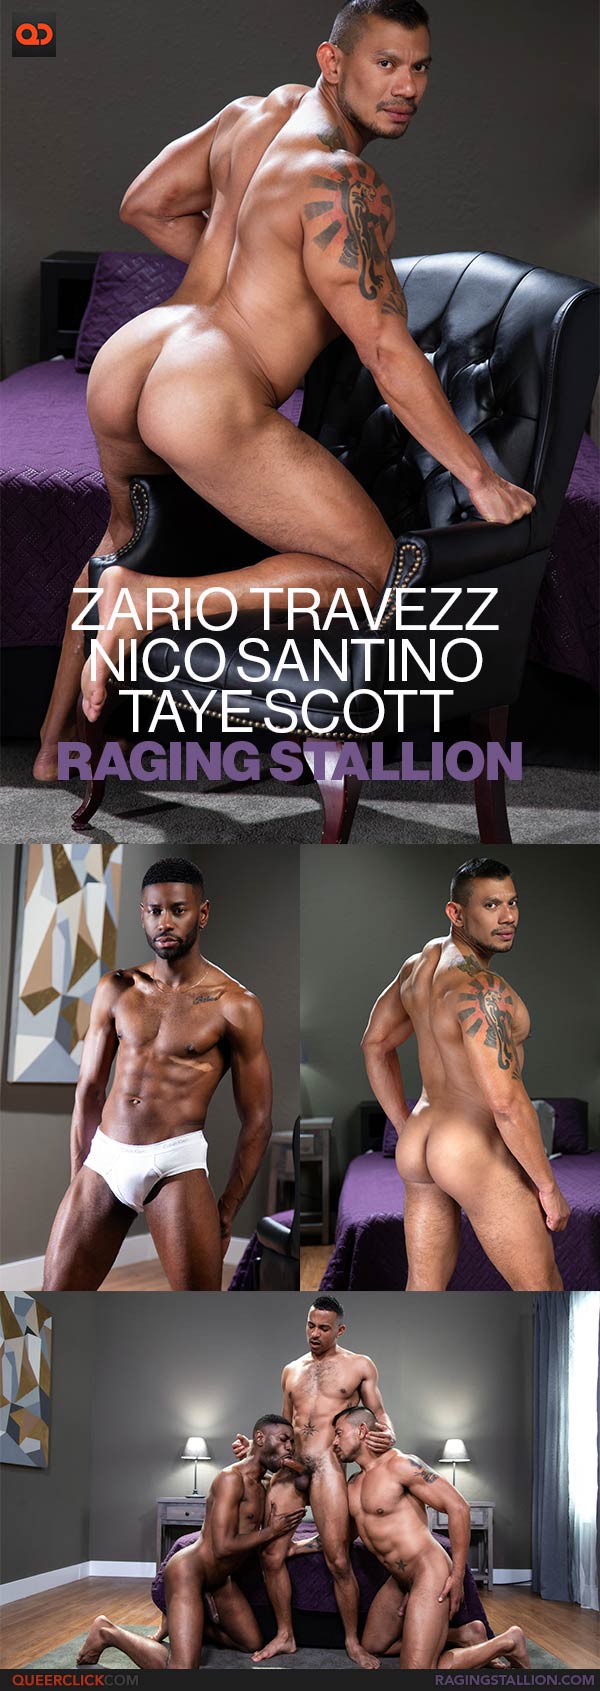 Raging Stallion: Zario Travezz, Nico Santino and Taye Scott